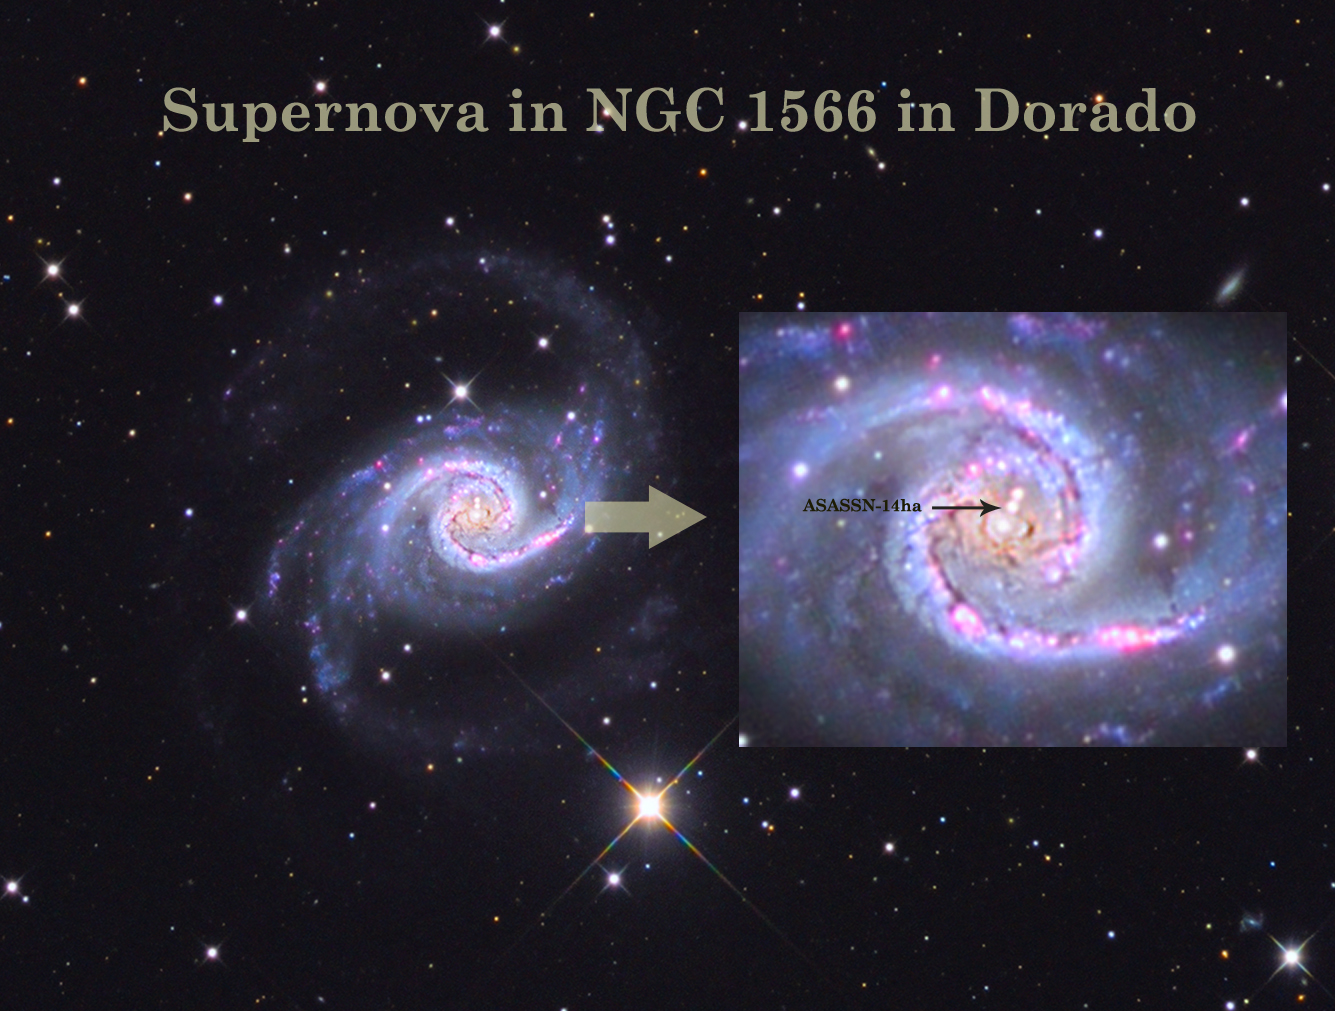 Supernova ASASSN-14ha